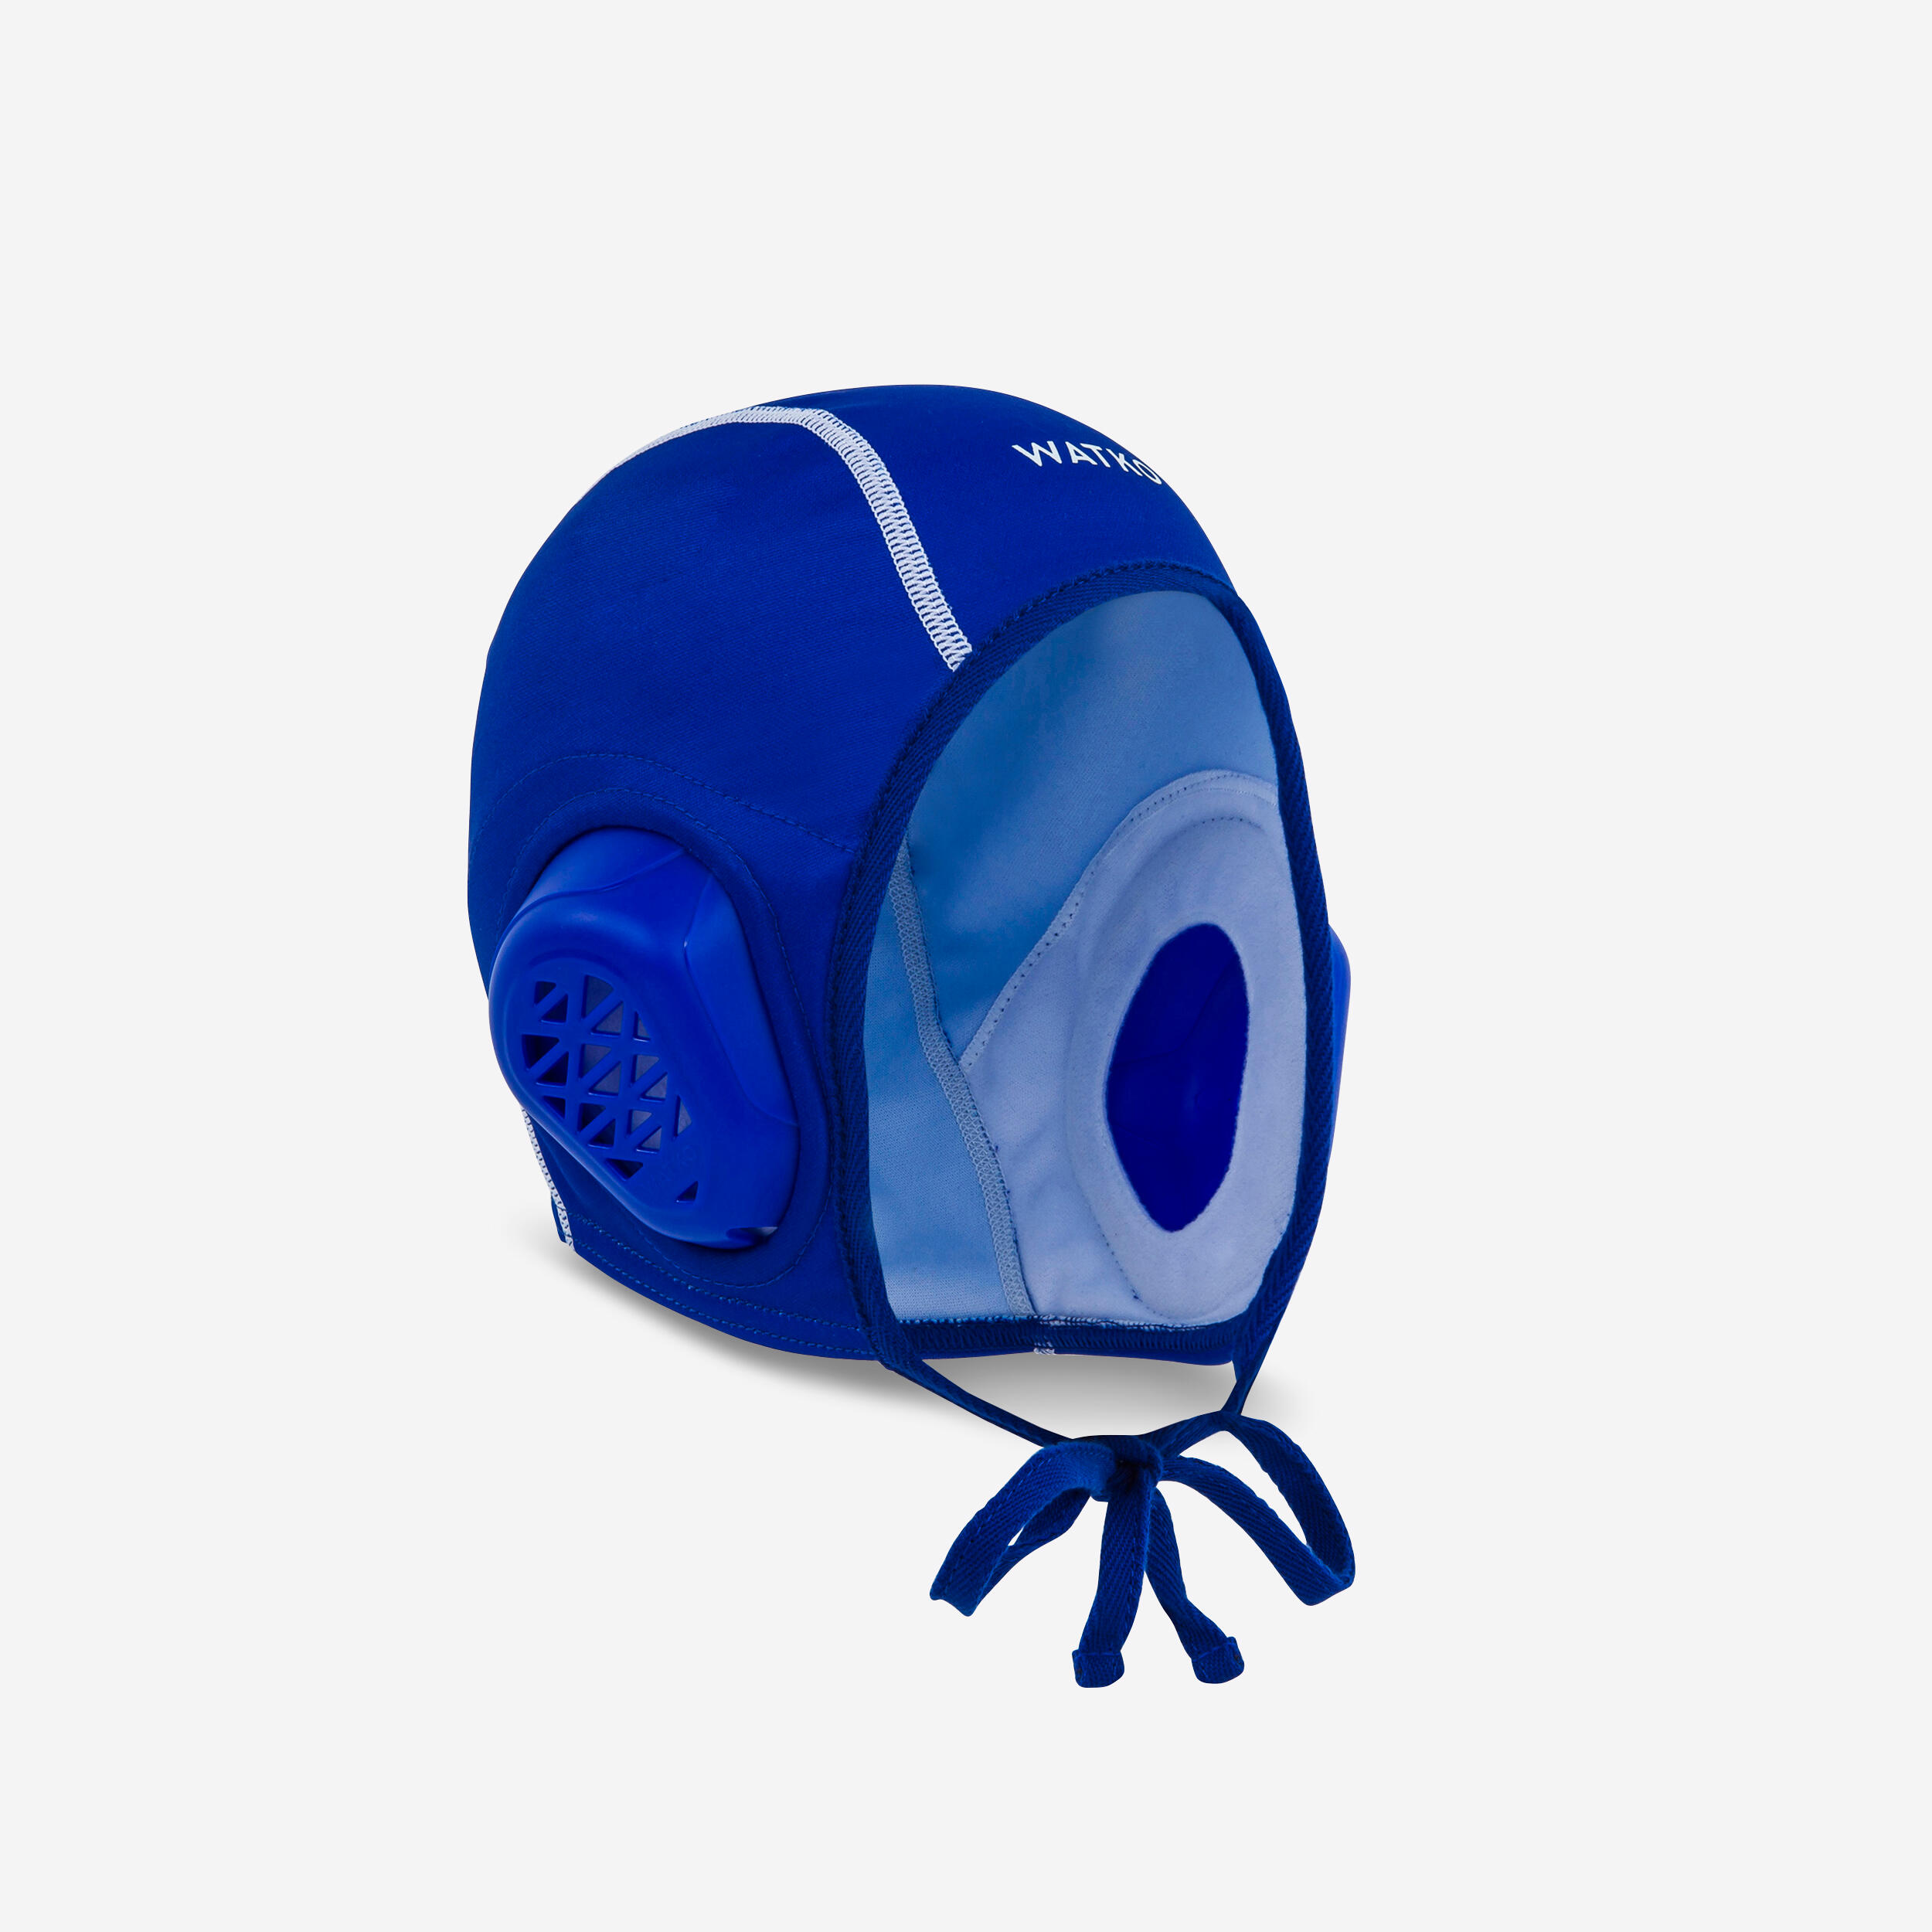 Wasserball-Kappe Erwachsene - WP900 blau